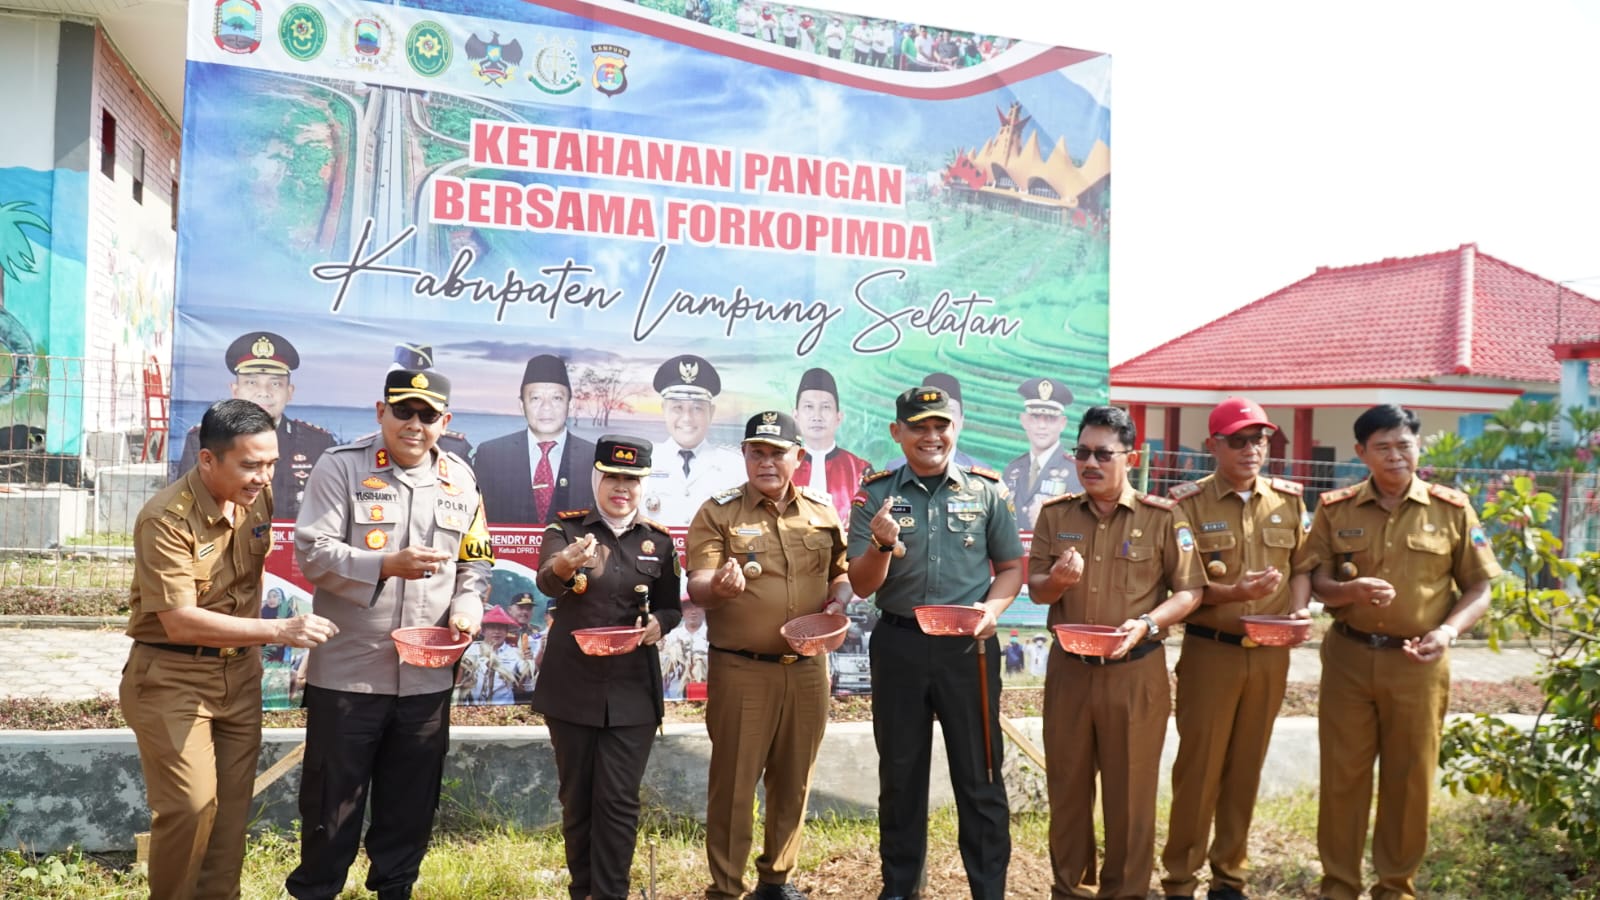 Ketahanan Pangan Bersama Forkopimda Kabupaten Lampung Selatan